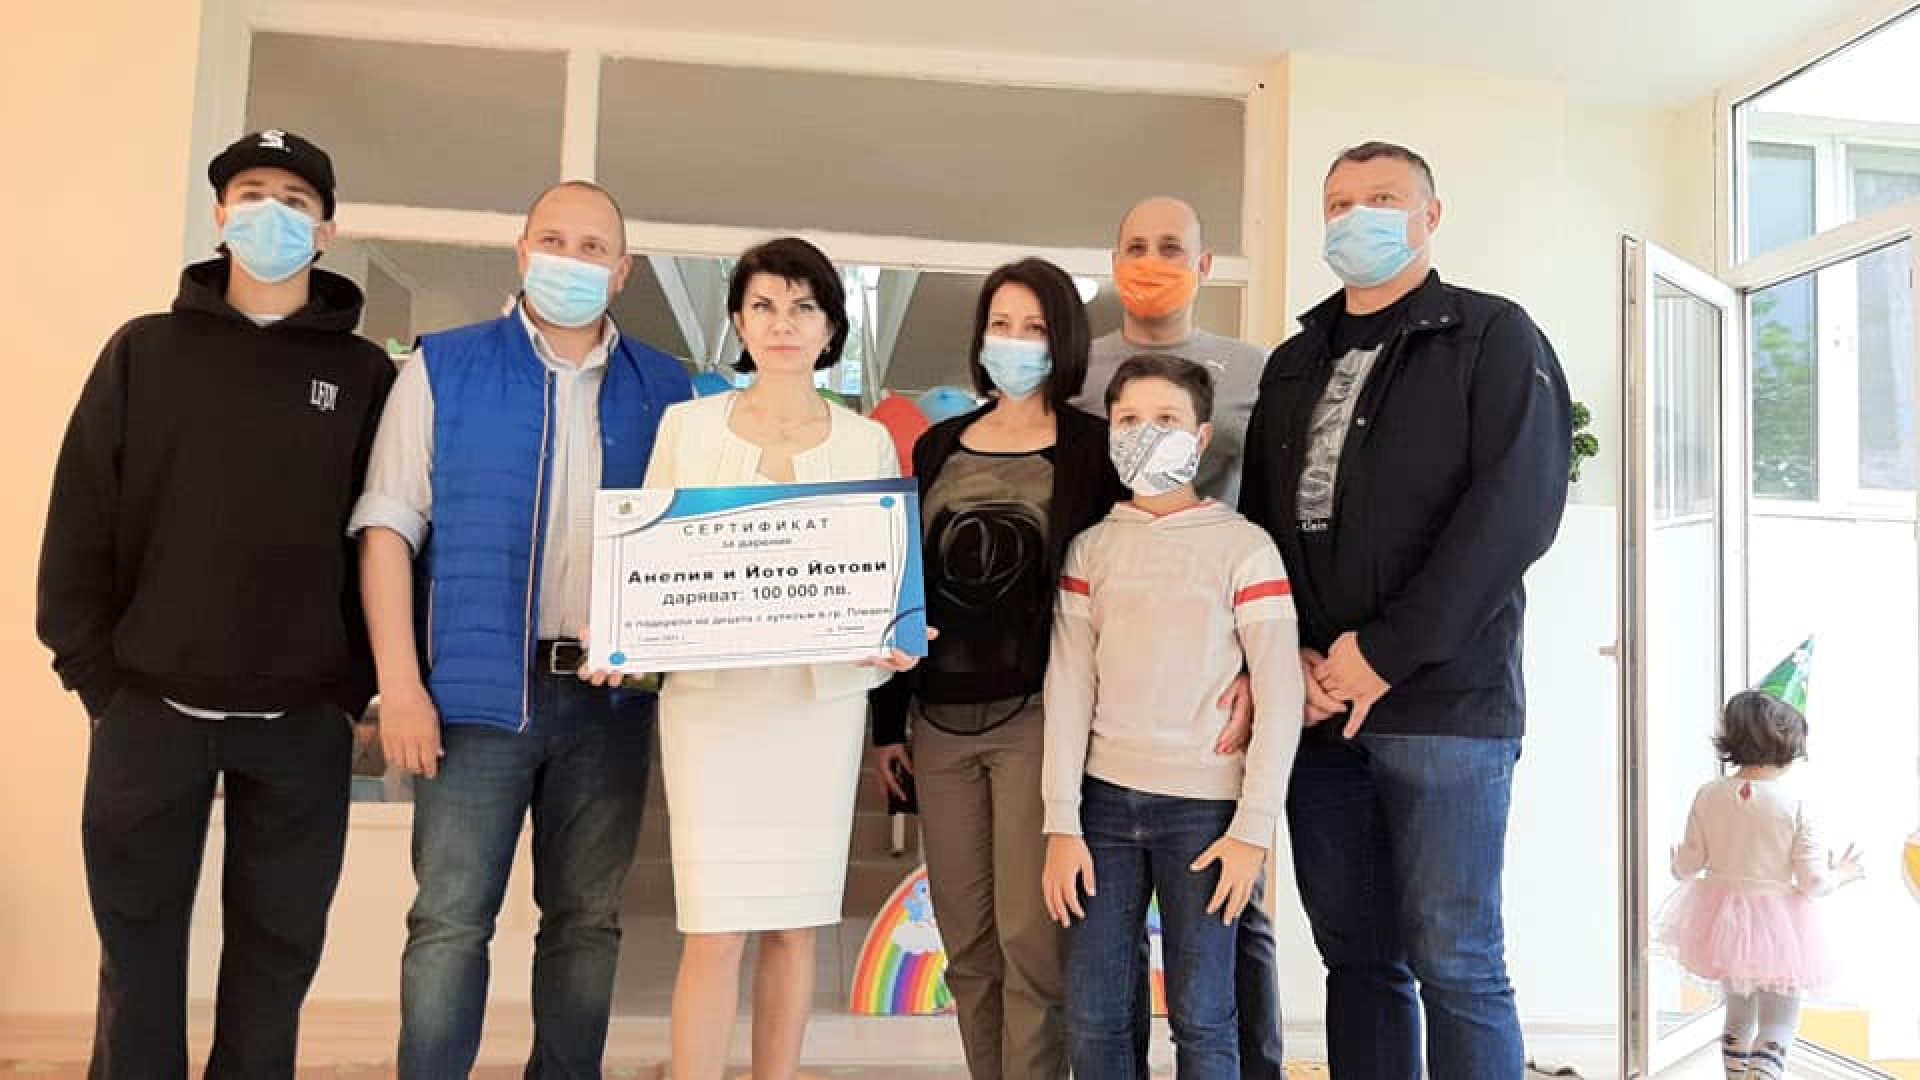 Български професор дари 100 000 лв. на център за деца с аутизъм в Плевен